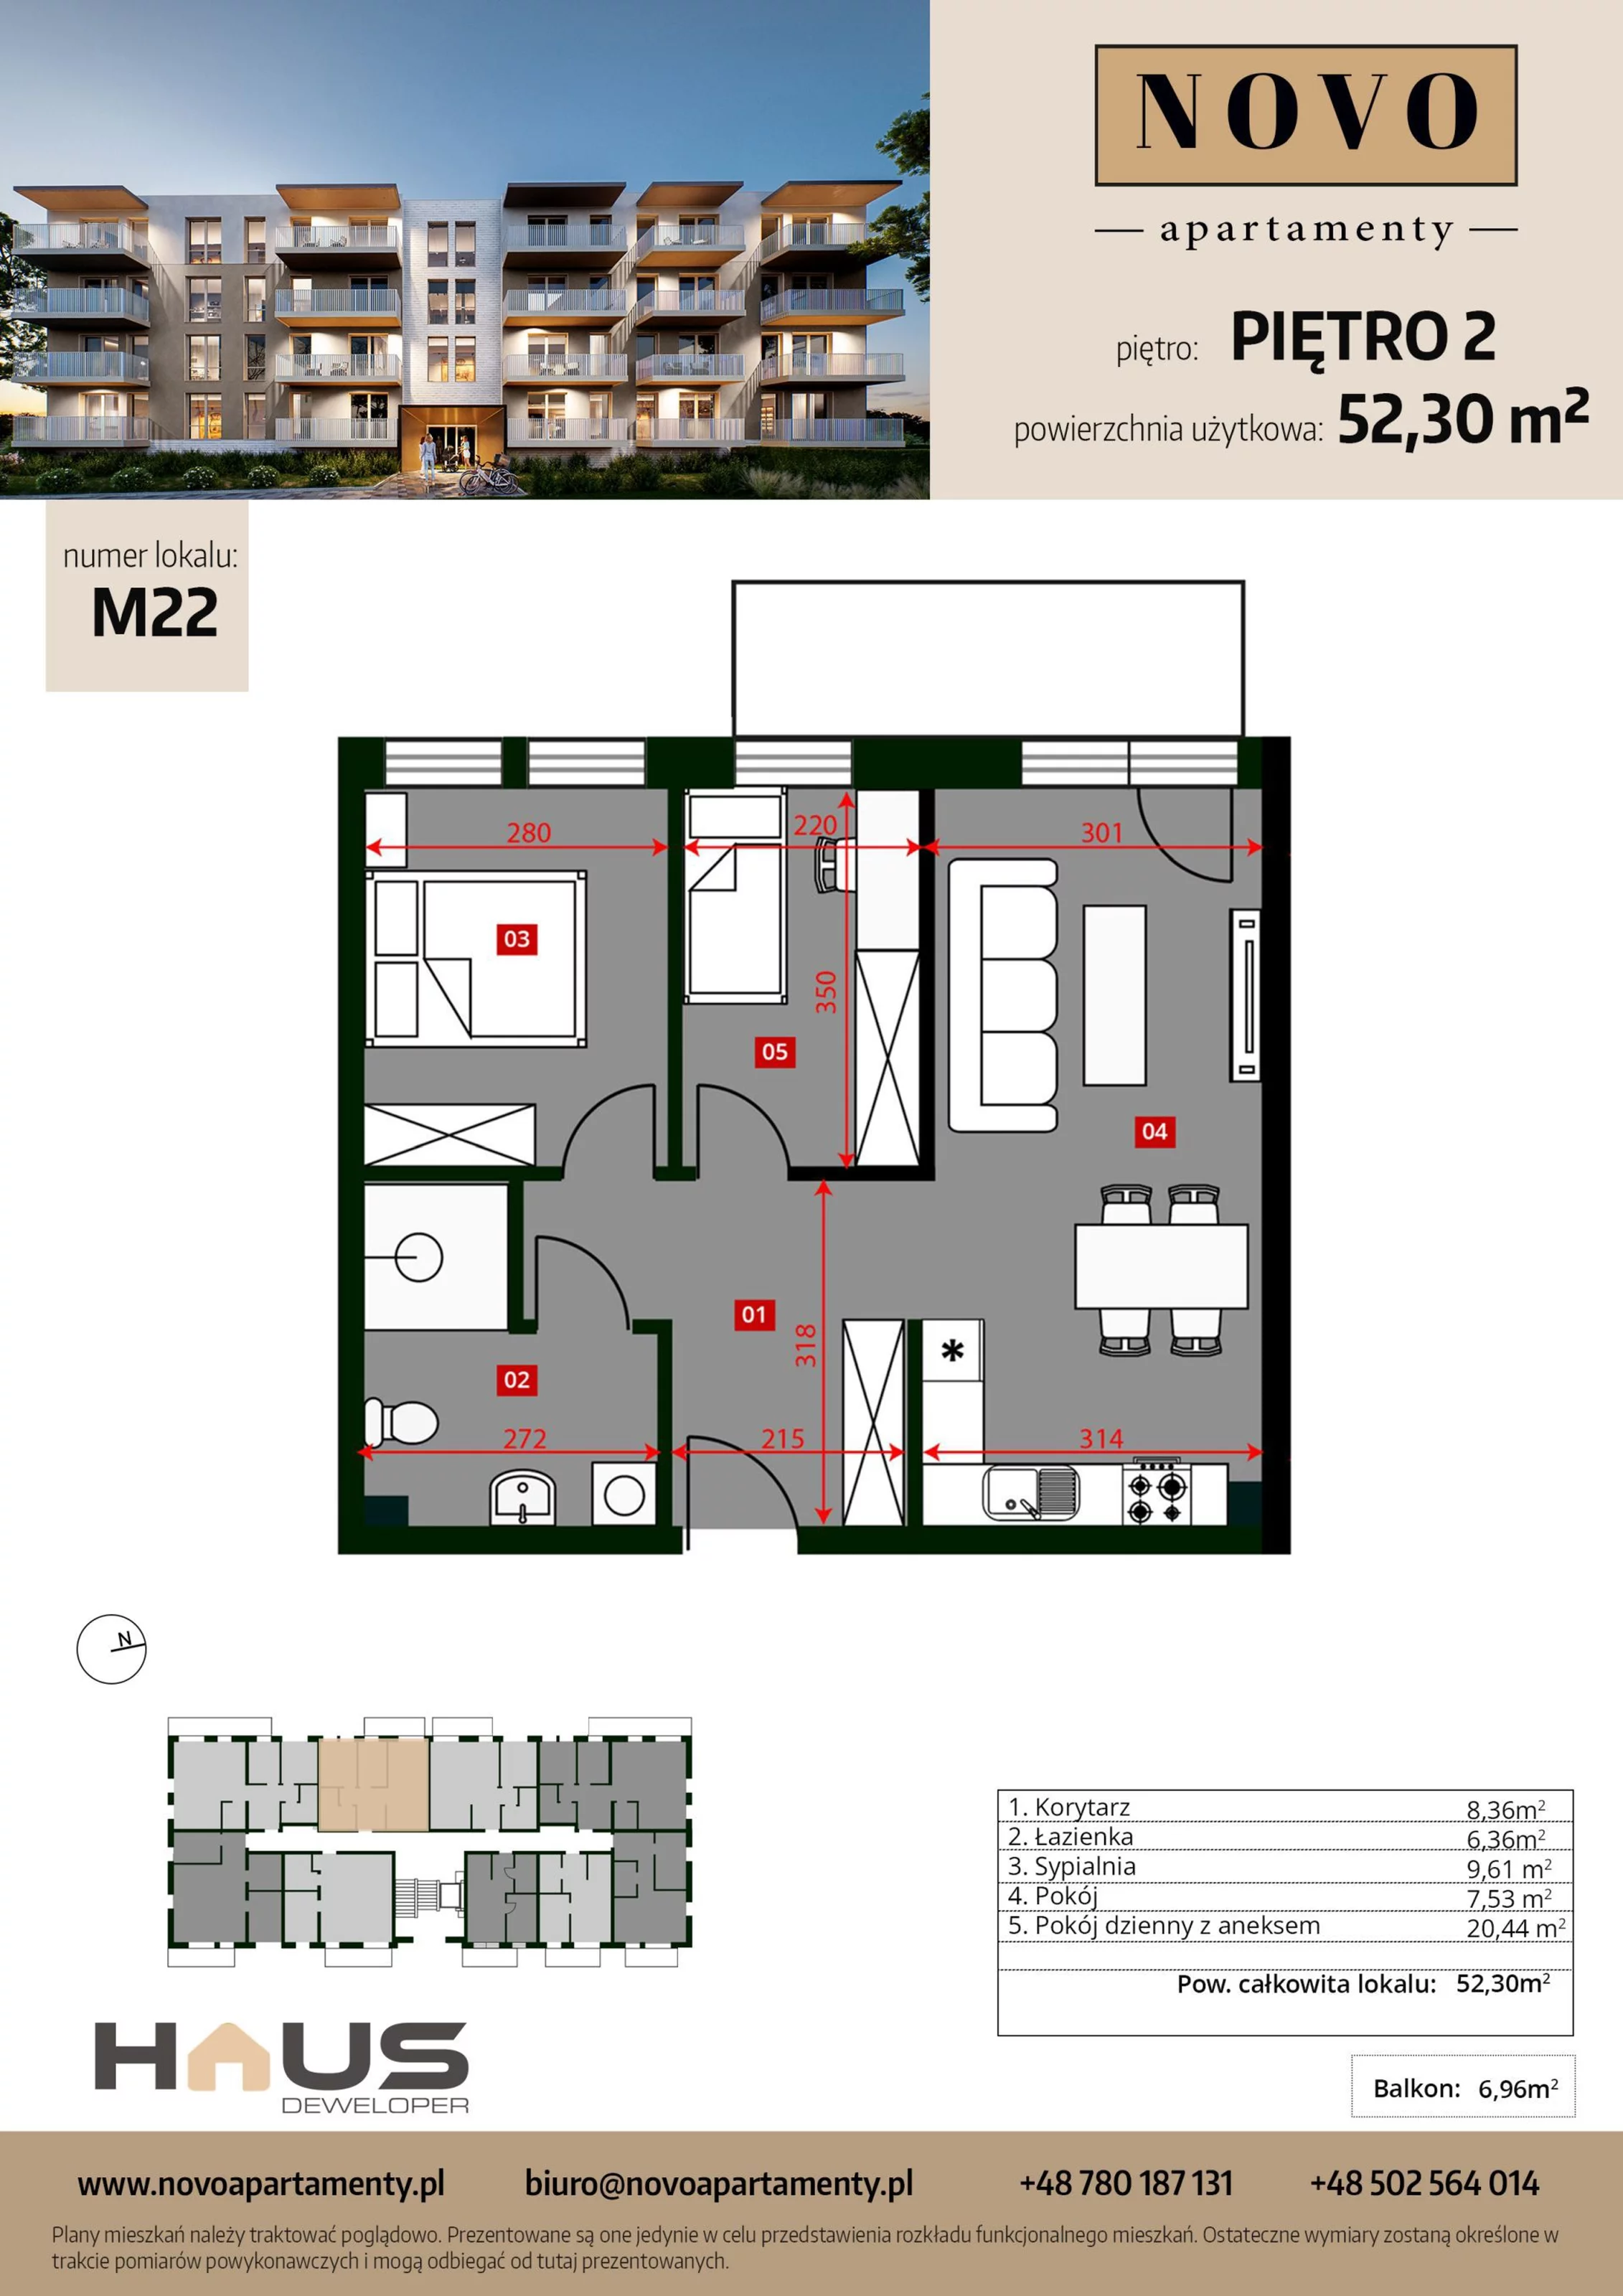 Mieszkanie 52,30 m², piętro 2, oferta nr M22, Apartamenty NOVO, Nysa, ul. Franciszkańska